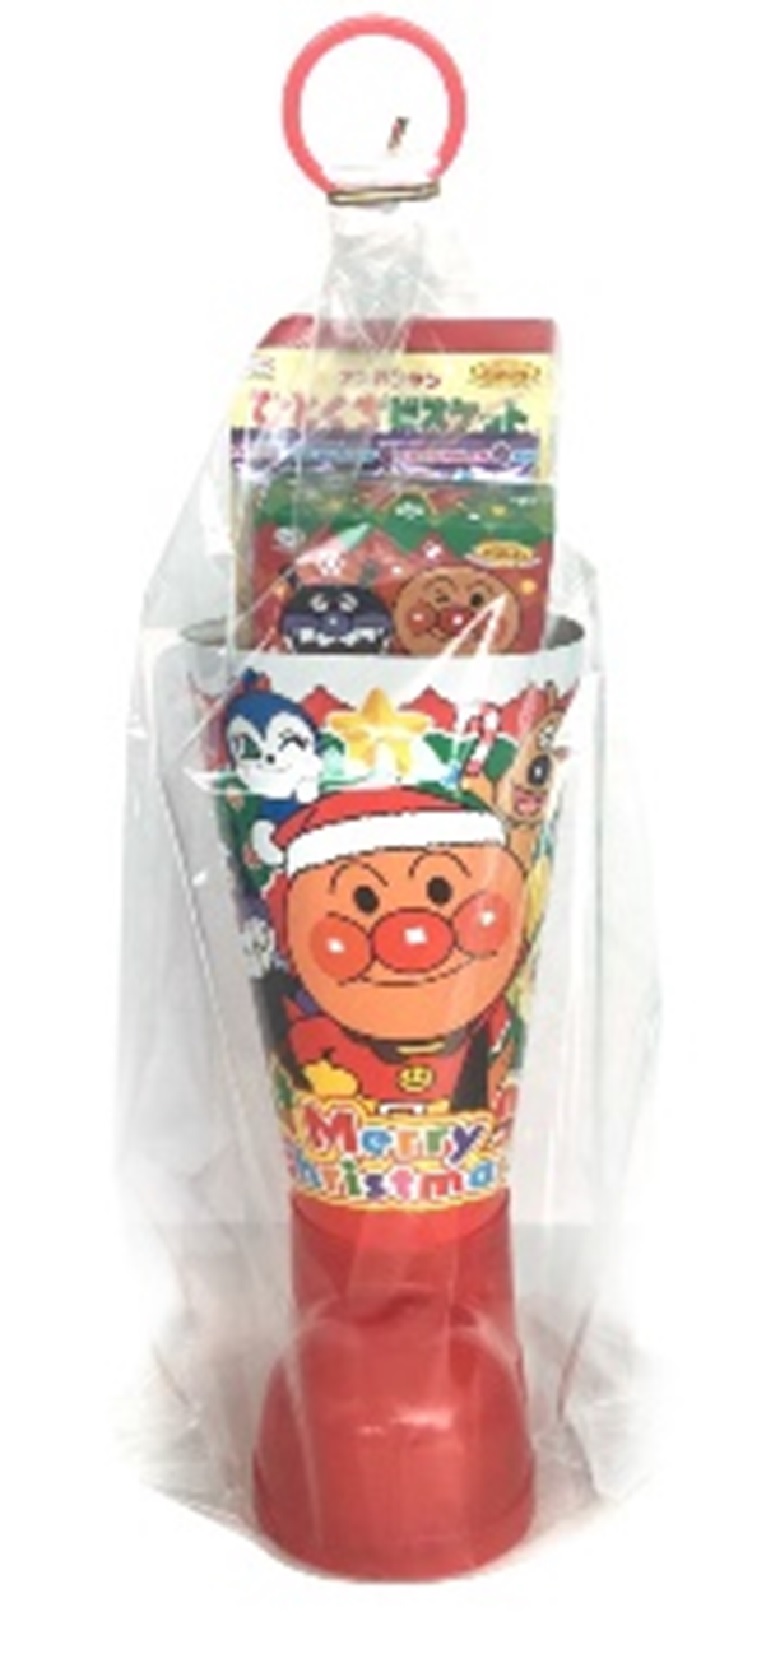 年クリスマス スーパー コンビニで買えるアンパンマン商品をご紹介 お菓子と わたし お菓子好きのための情報サイト